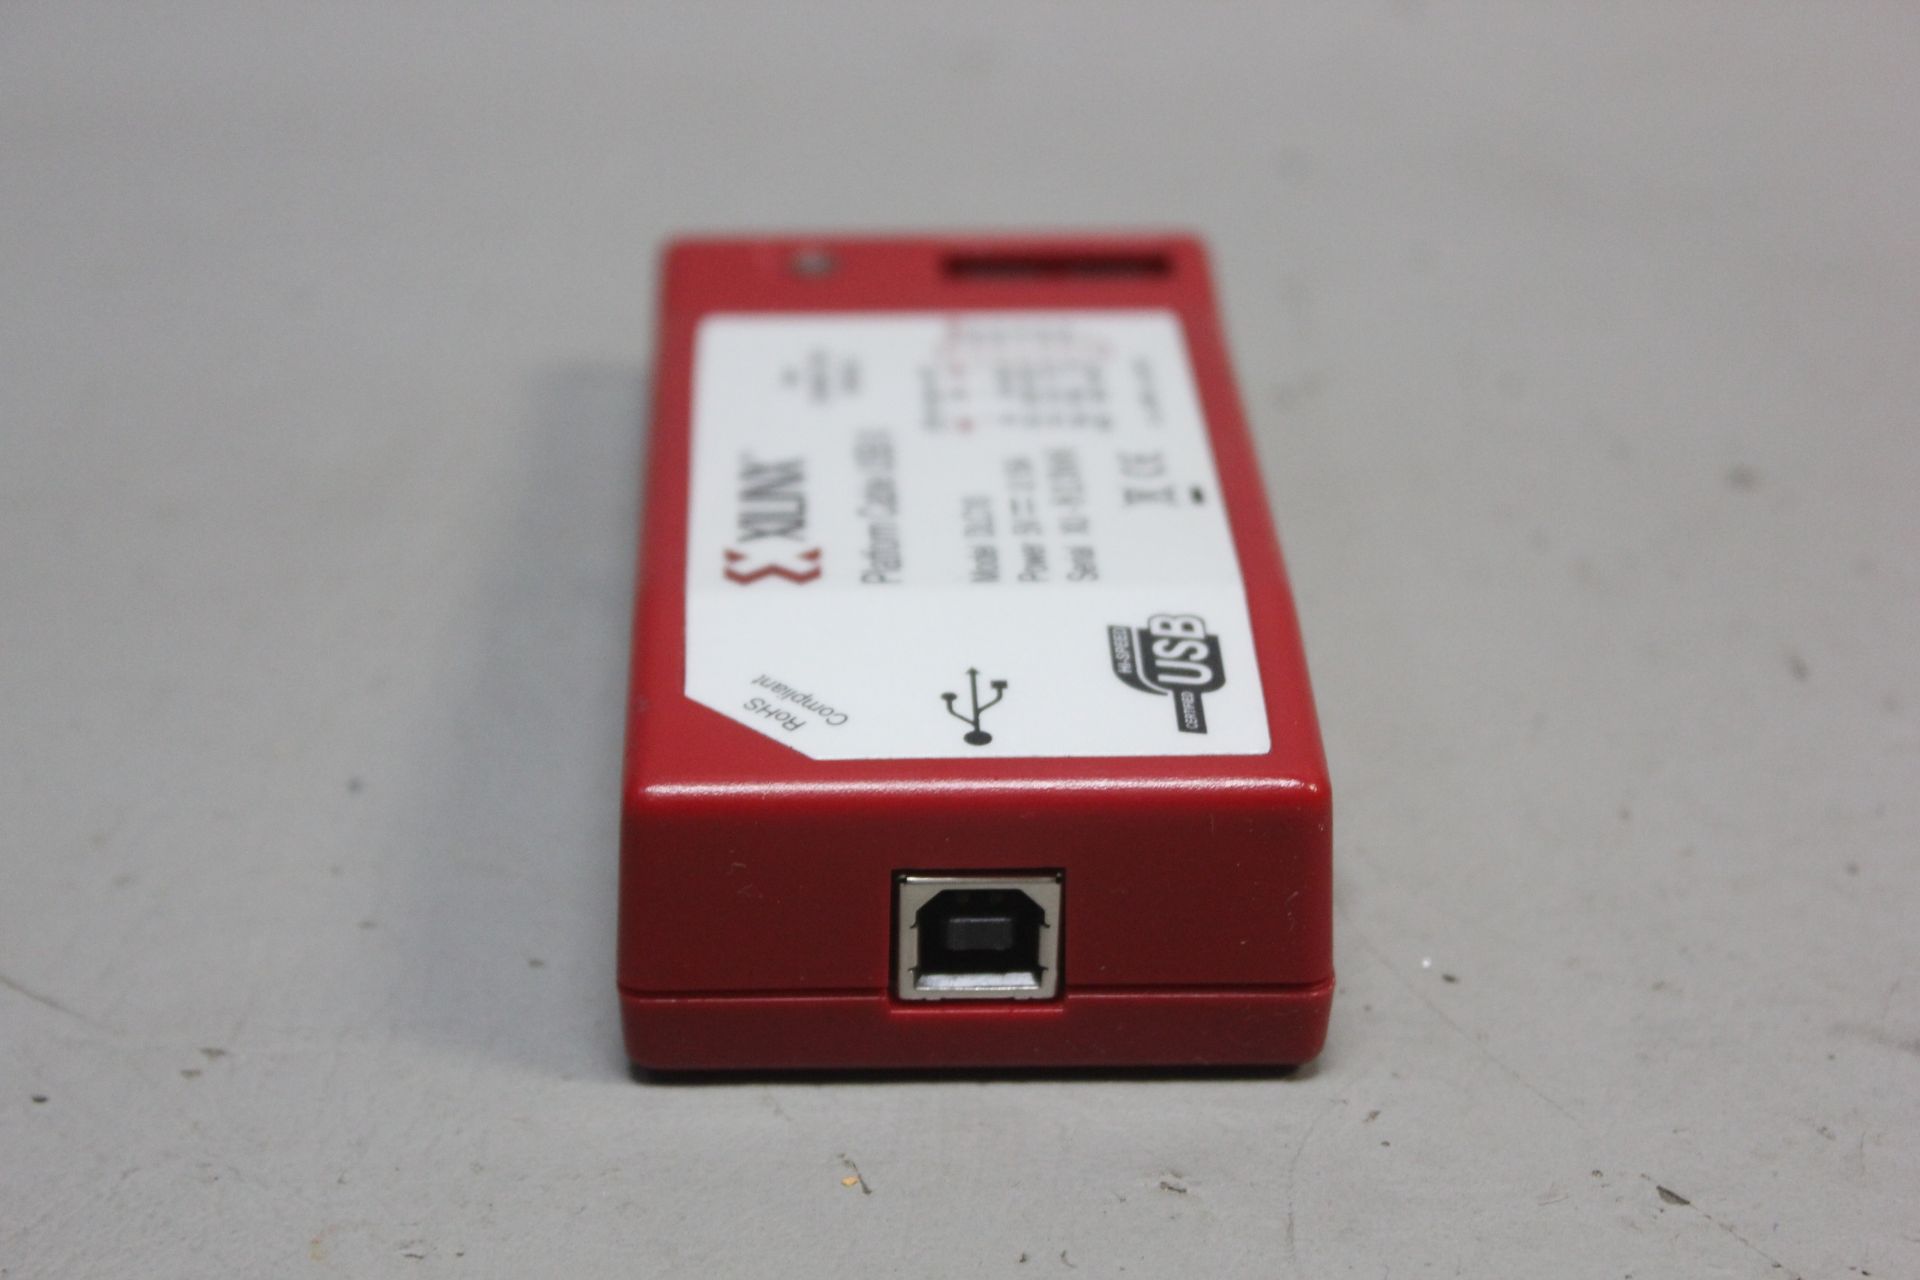 XILINX PLATFORM CABLE USB II - Image 2 of 2